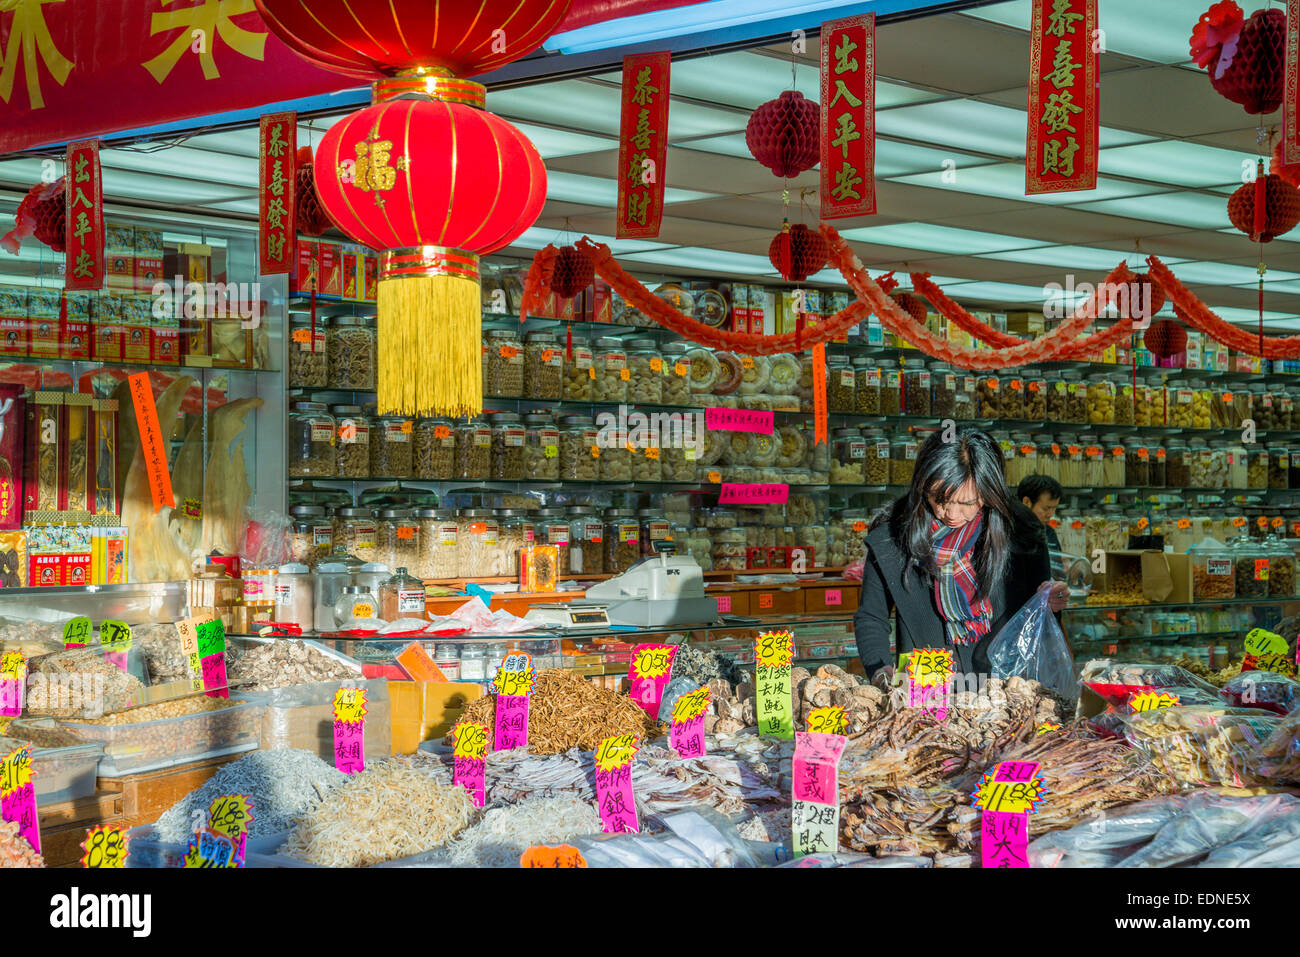 Chinese herbalist storefront, Chinatown, Vancouver, British Columbia, Canada, Stock Photo